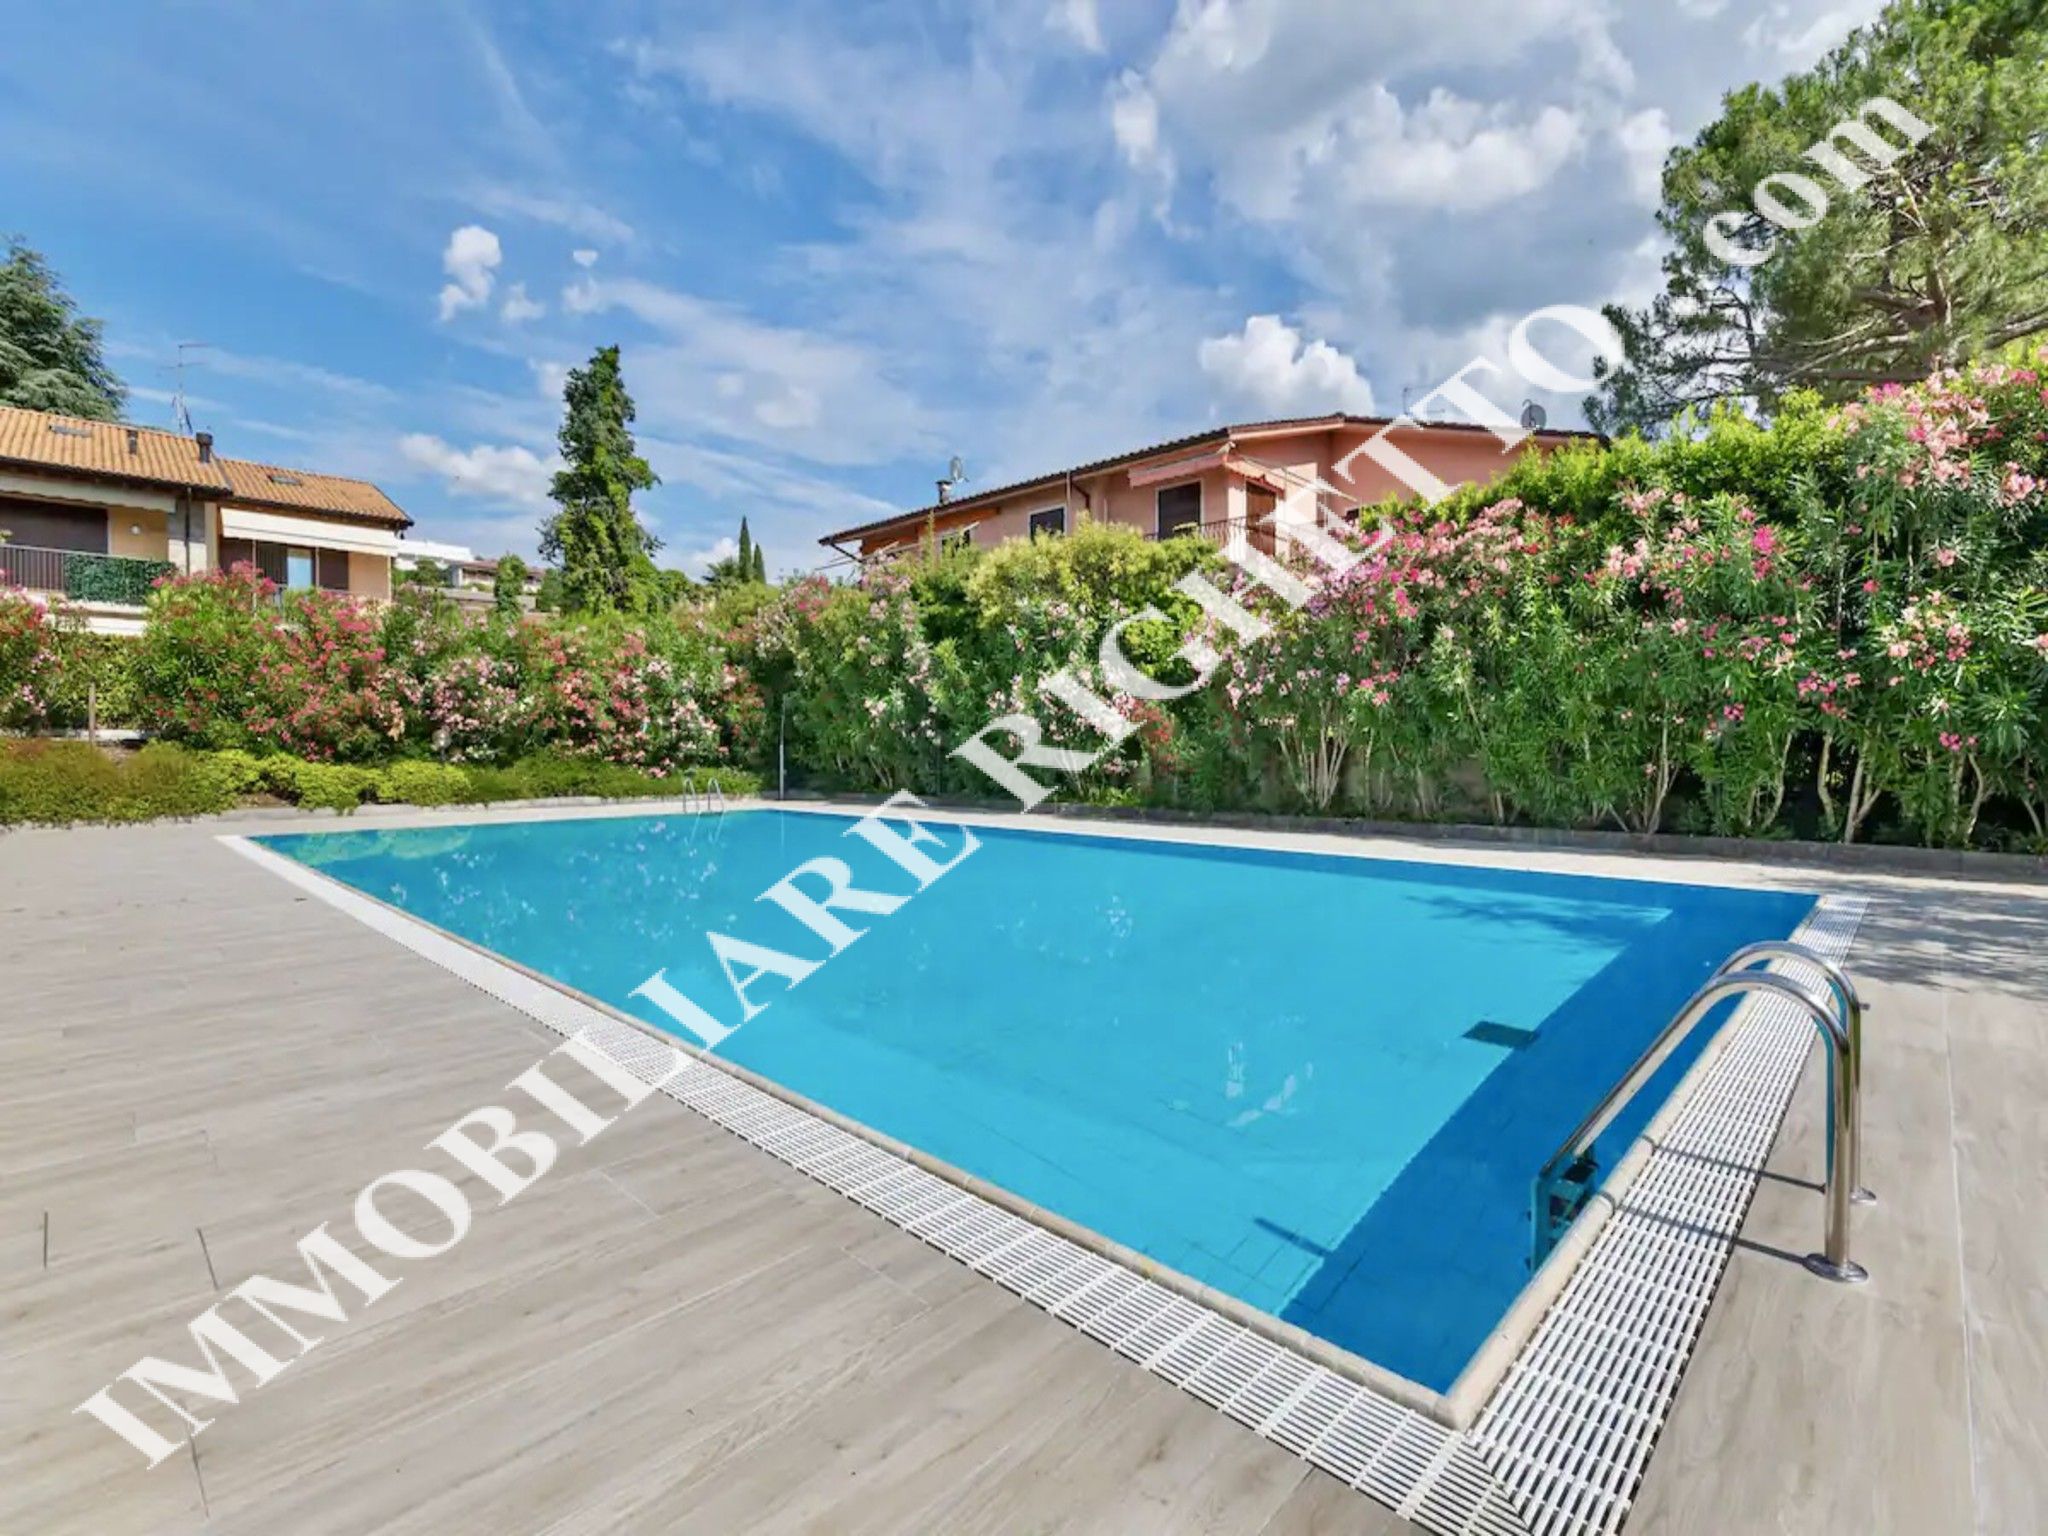 offerta immobile in vendita Spazioso appartamento residence con piscina.